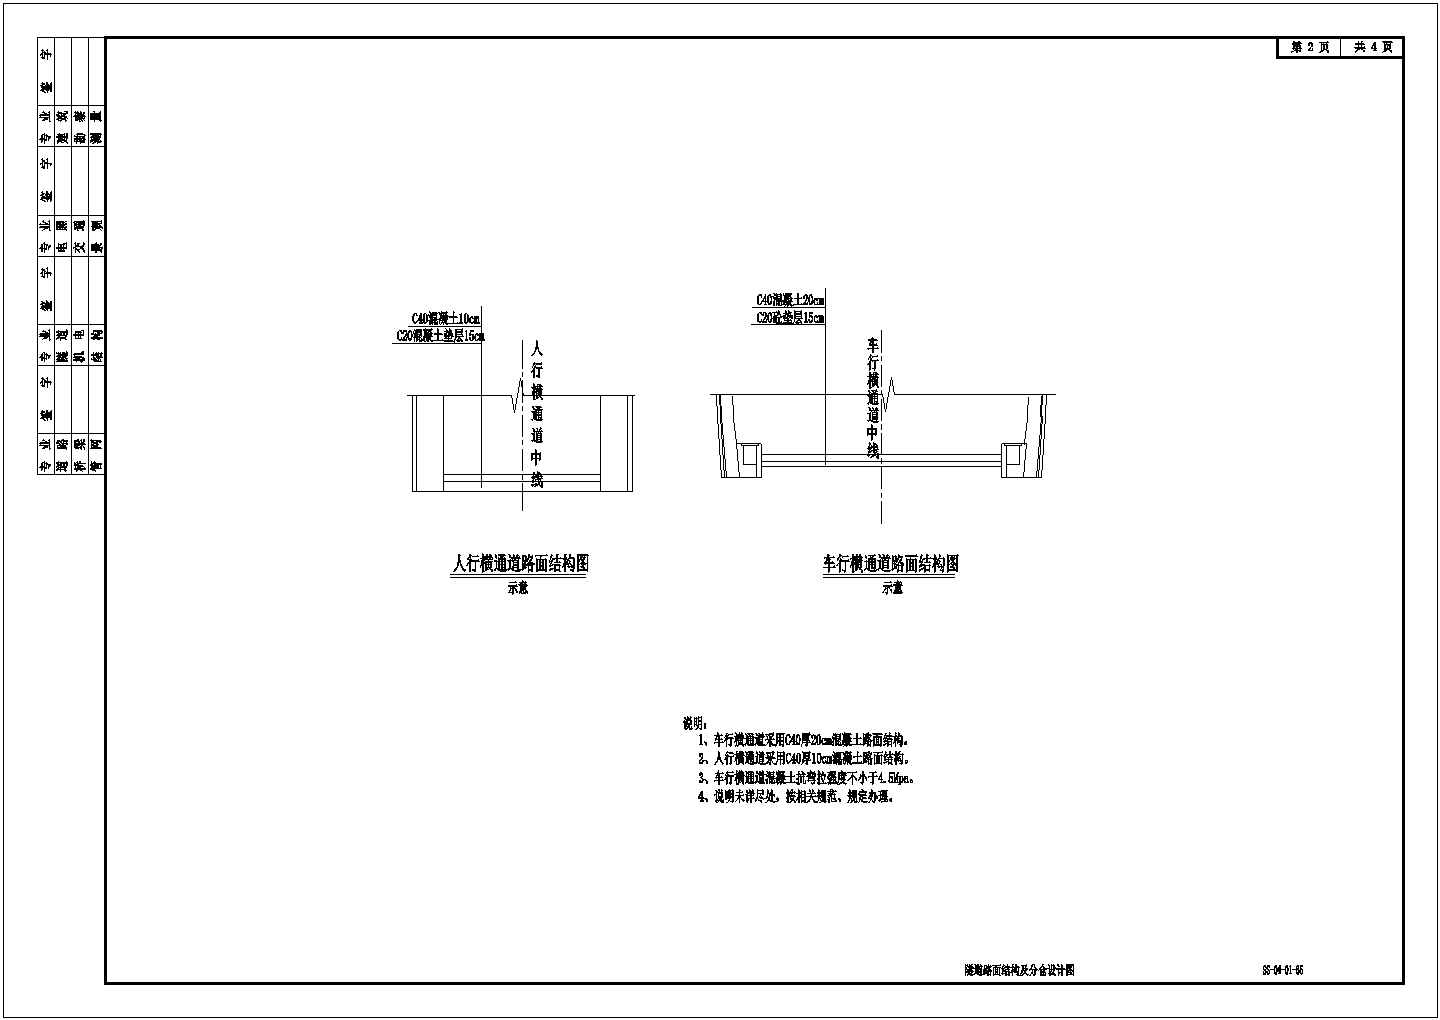 隧道路面结构及分仓设计图